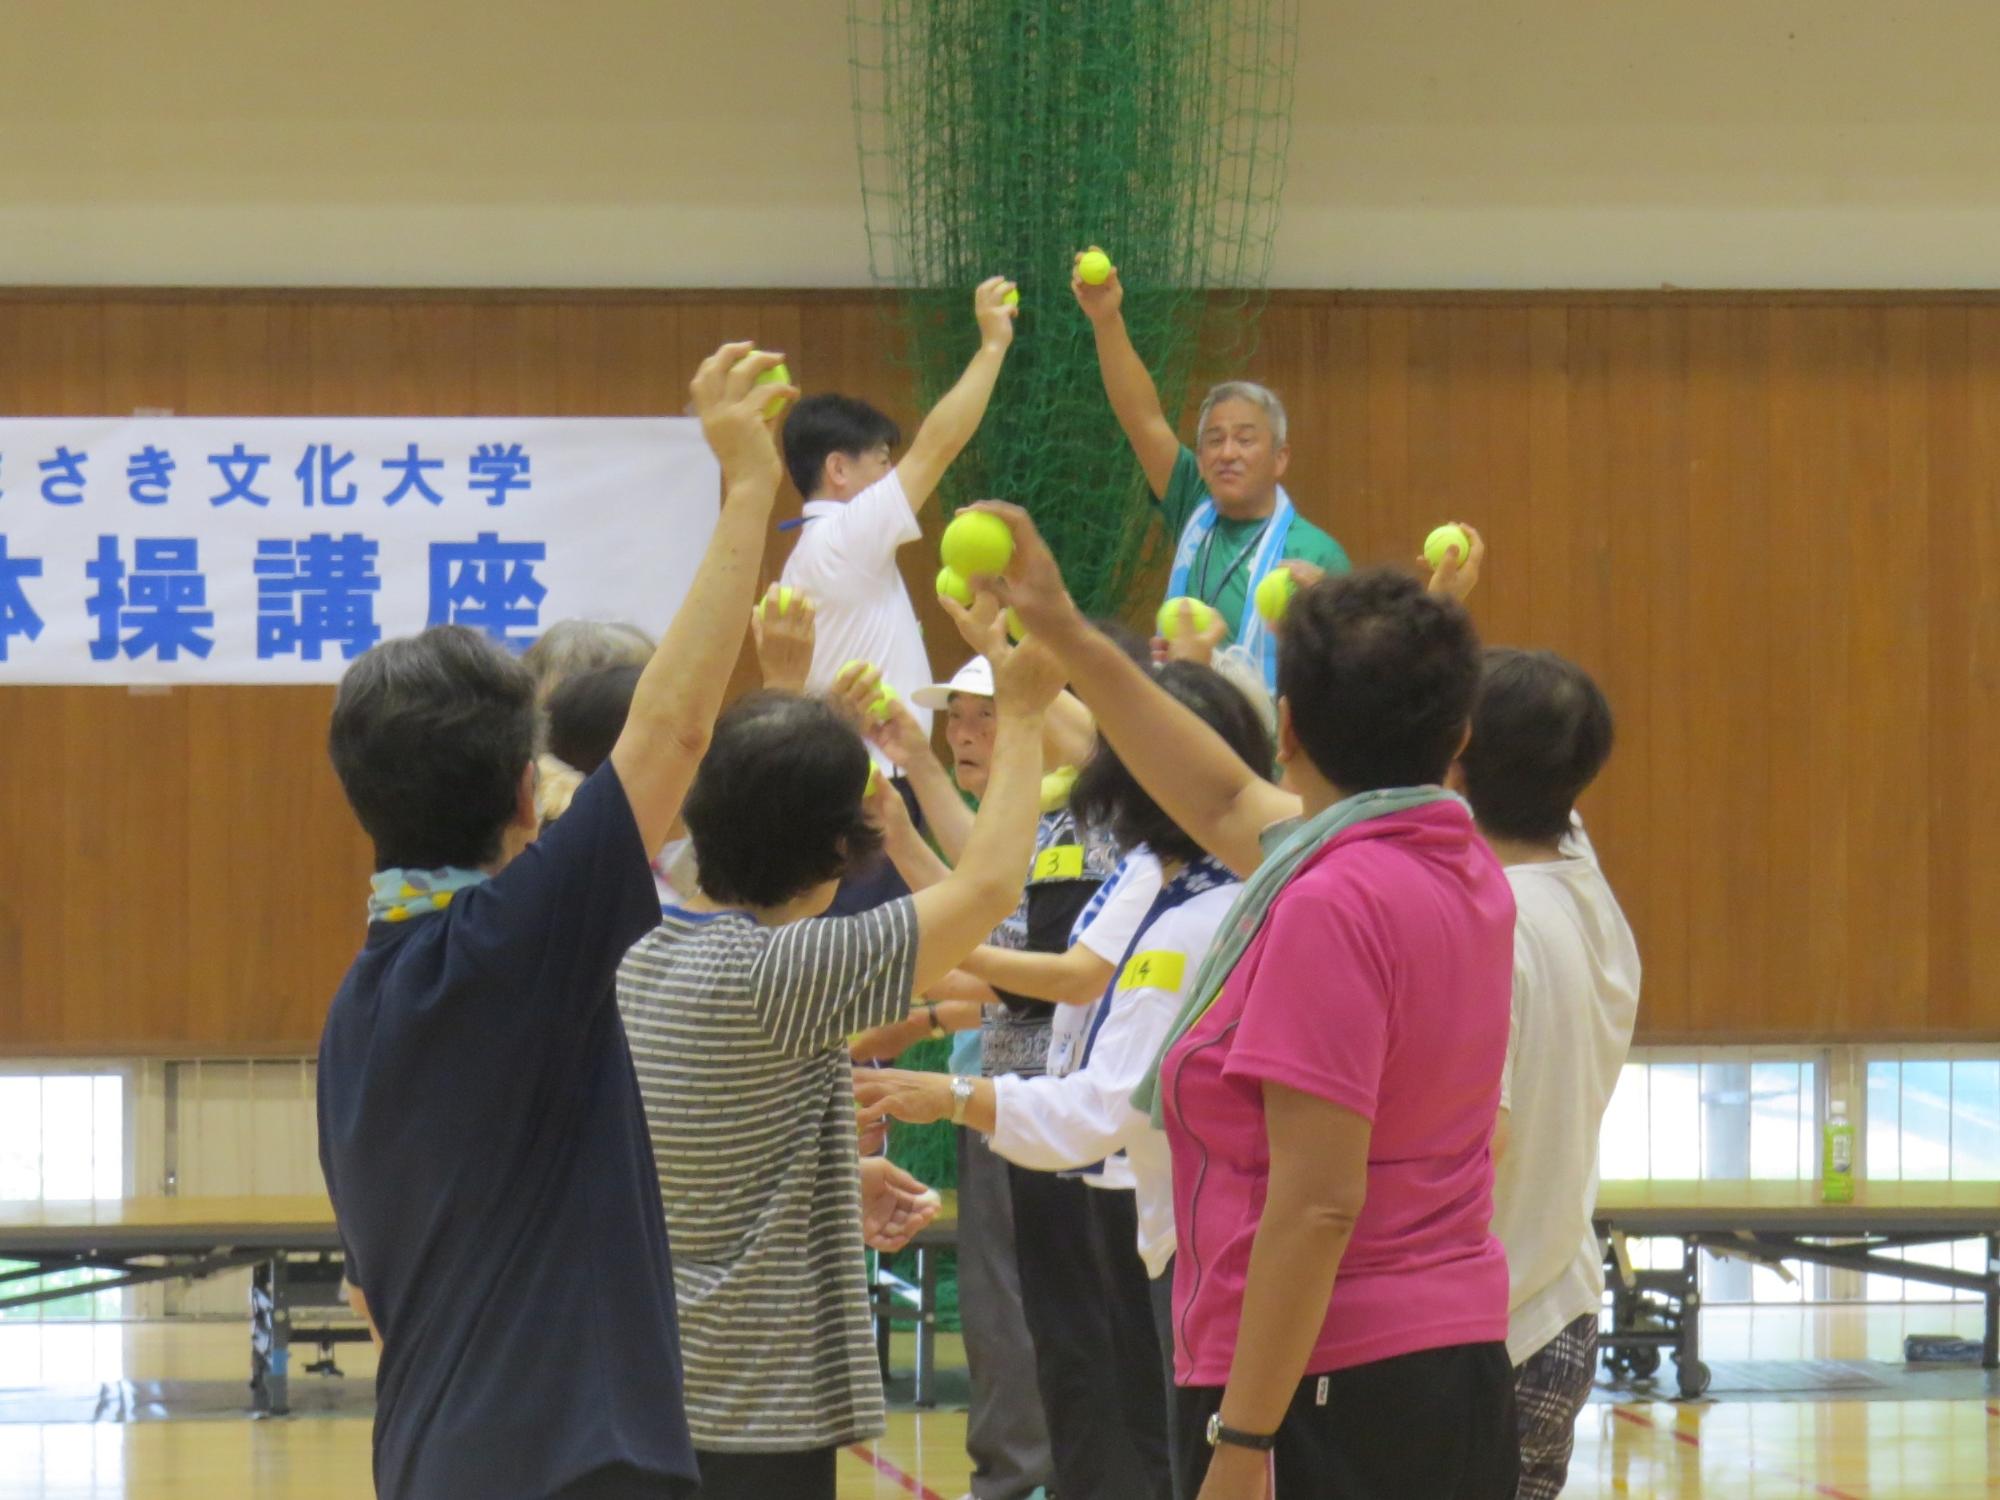 健康体操講座でテニスボールを持つ手を上げている写真